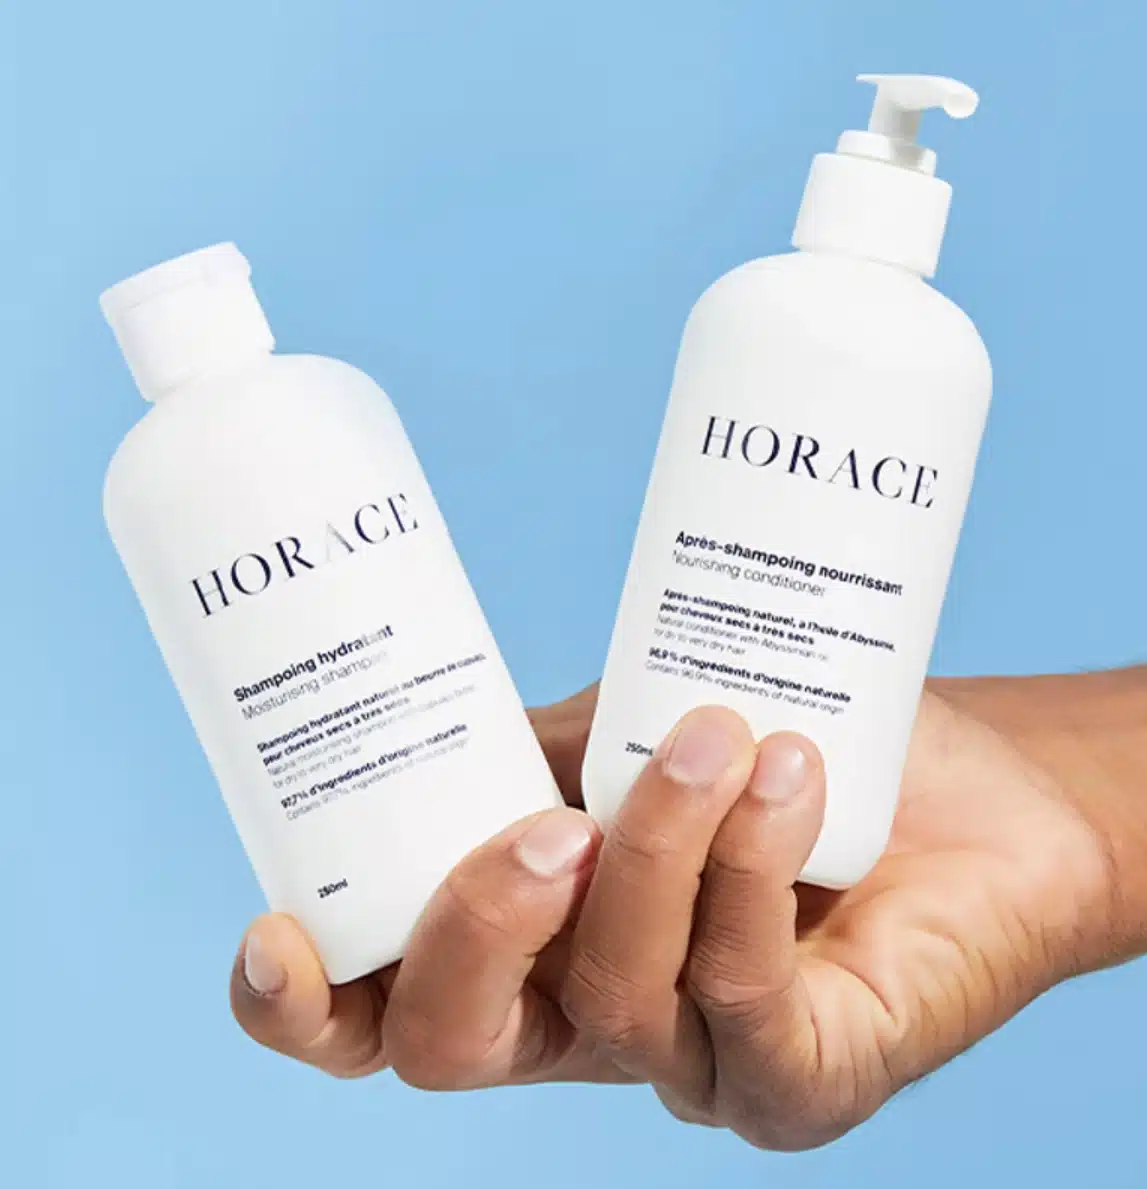 Horace long hair shampoo for men